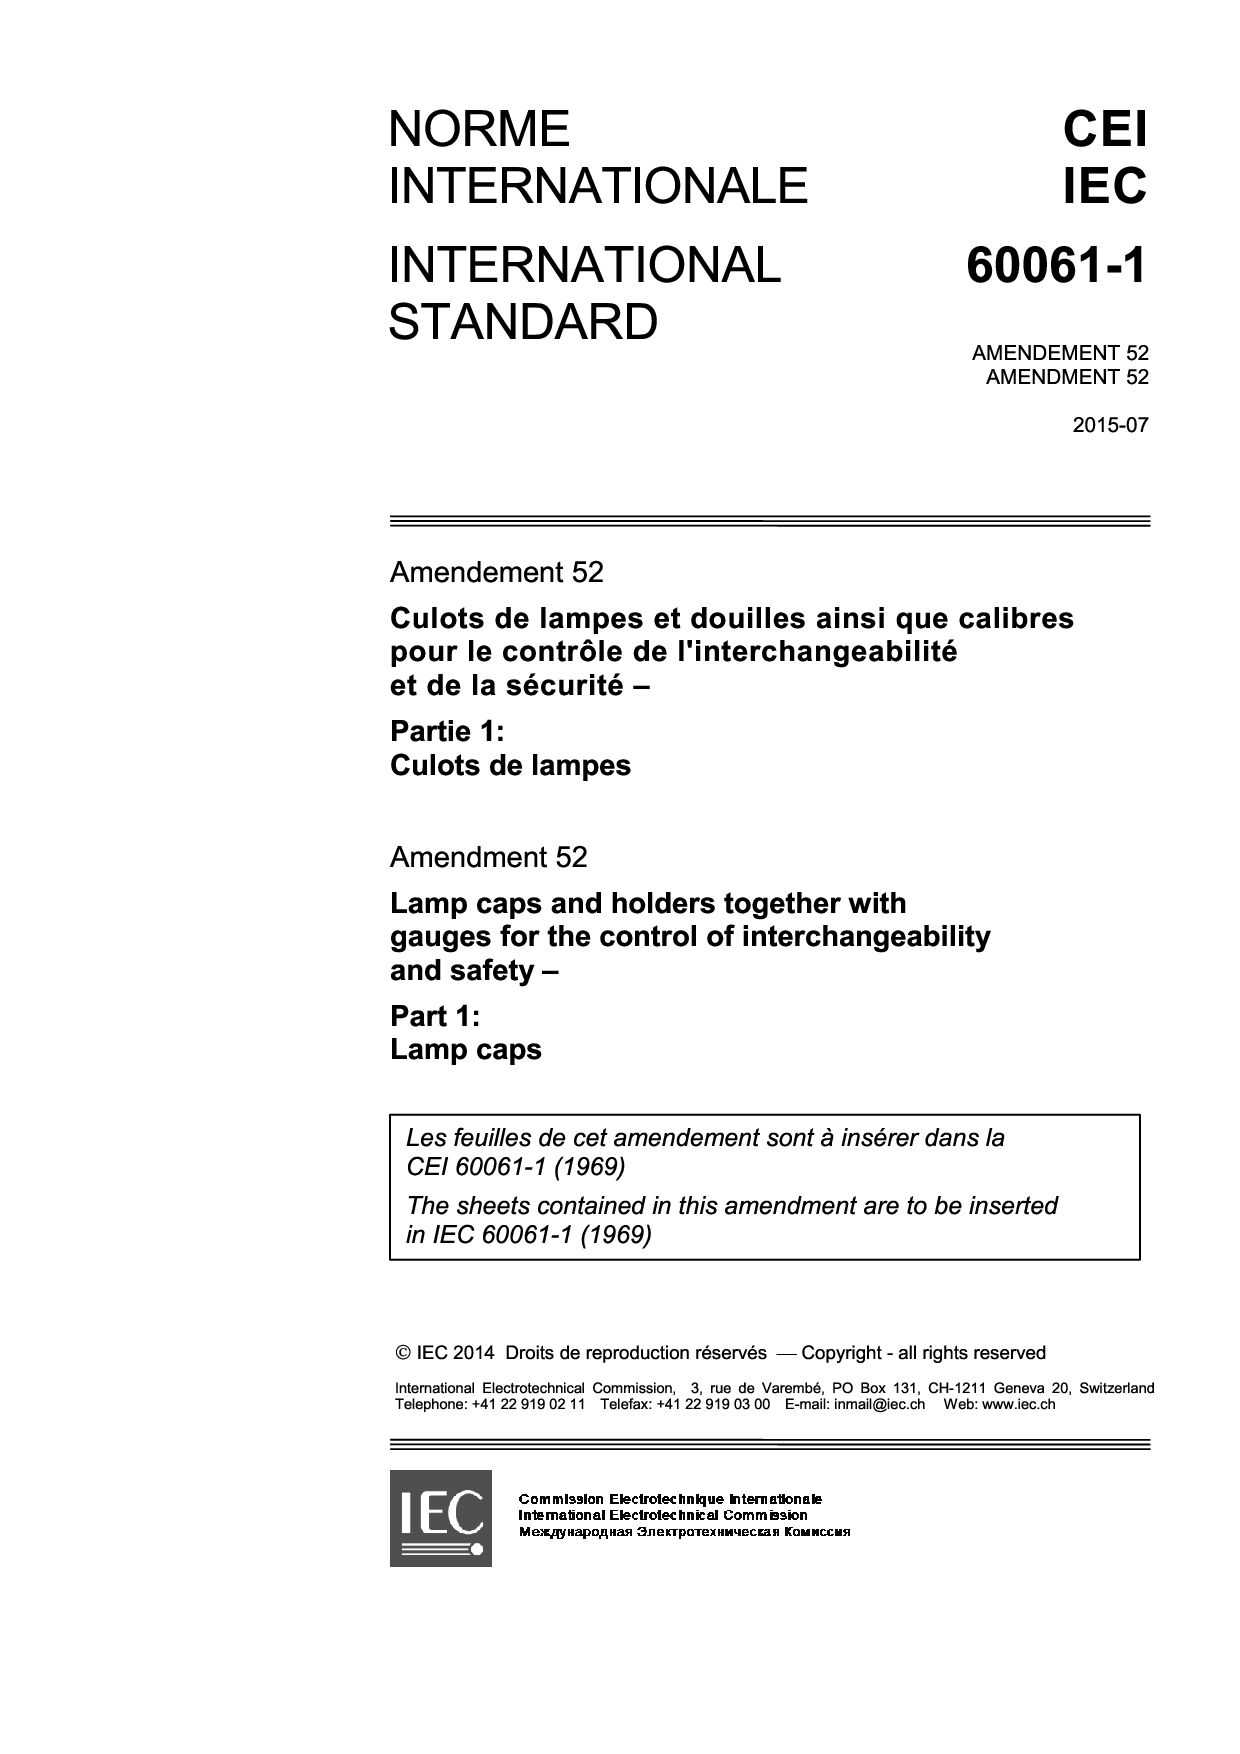 IEC 60061-1:1969/AMD52:2015